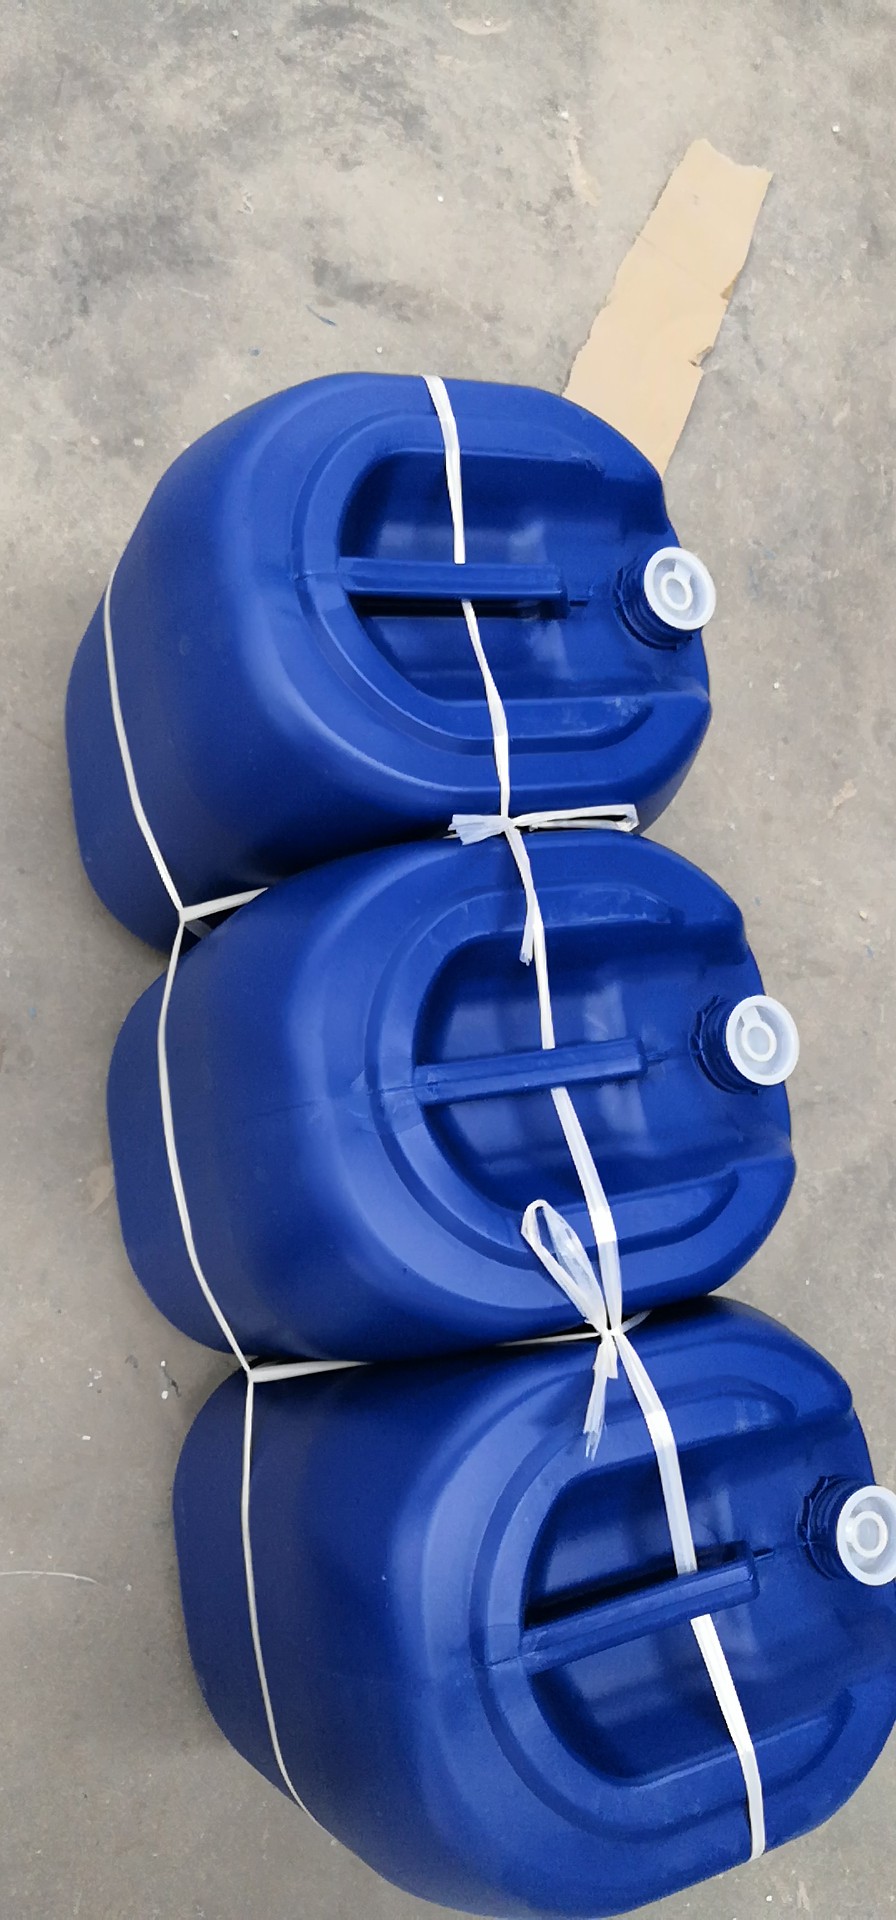 30升塑胶桶|塑料桶||包装桶|厂家直销|批发价格|哪家好|哪家便宜图片